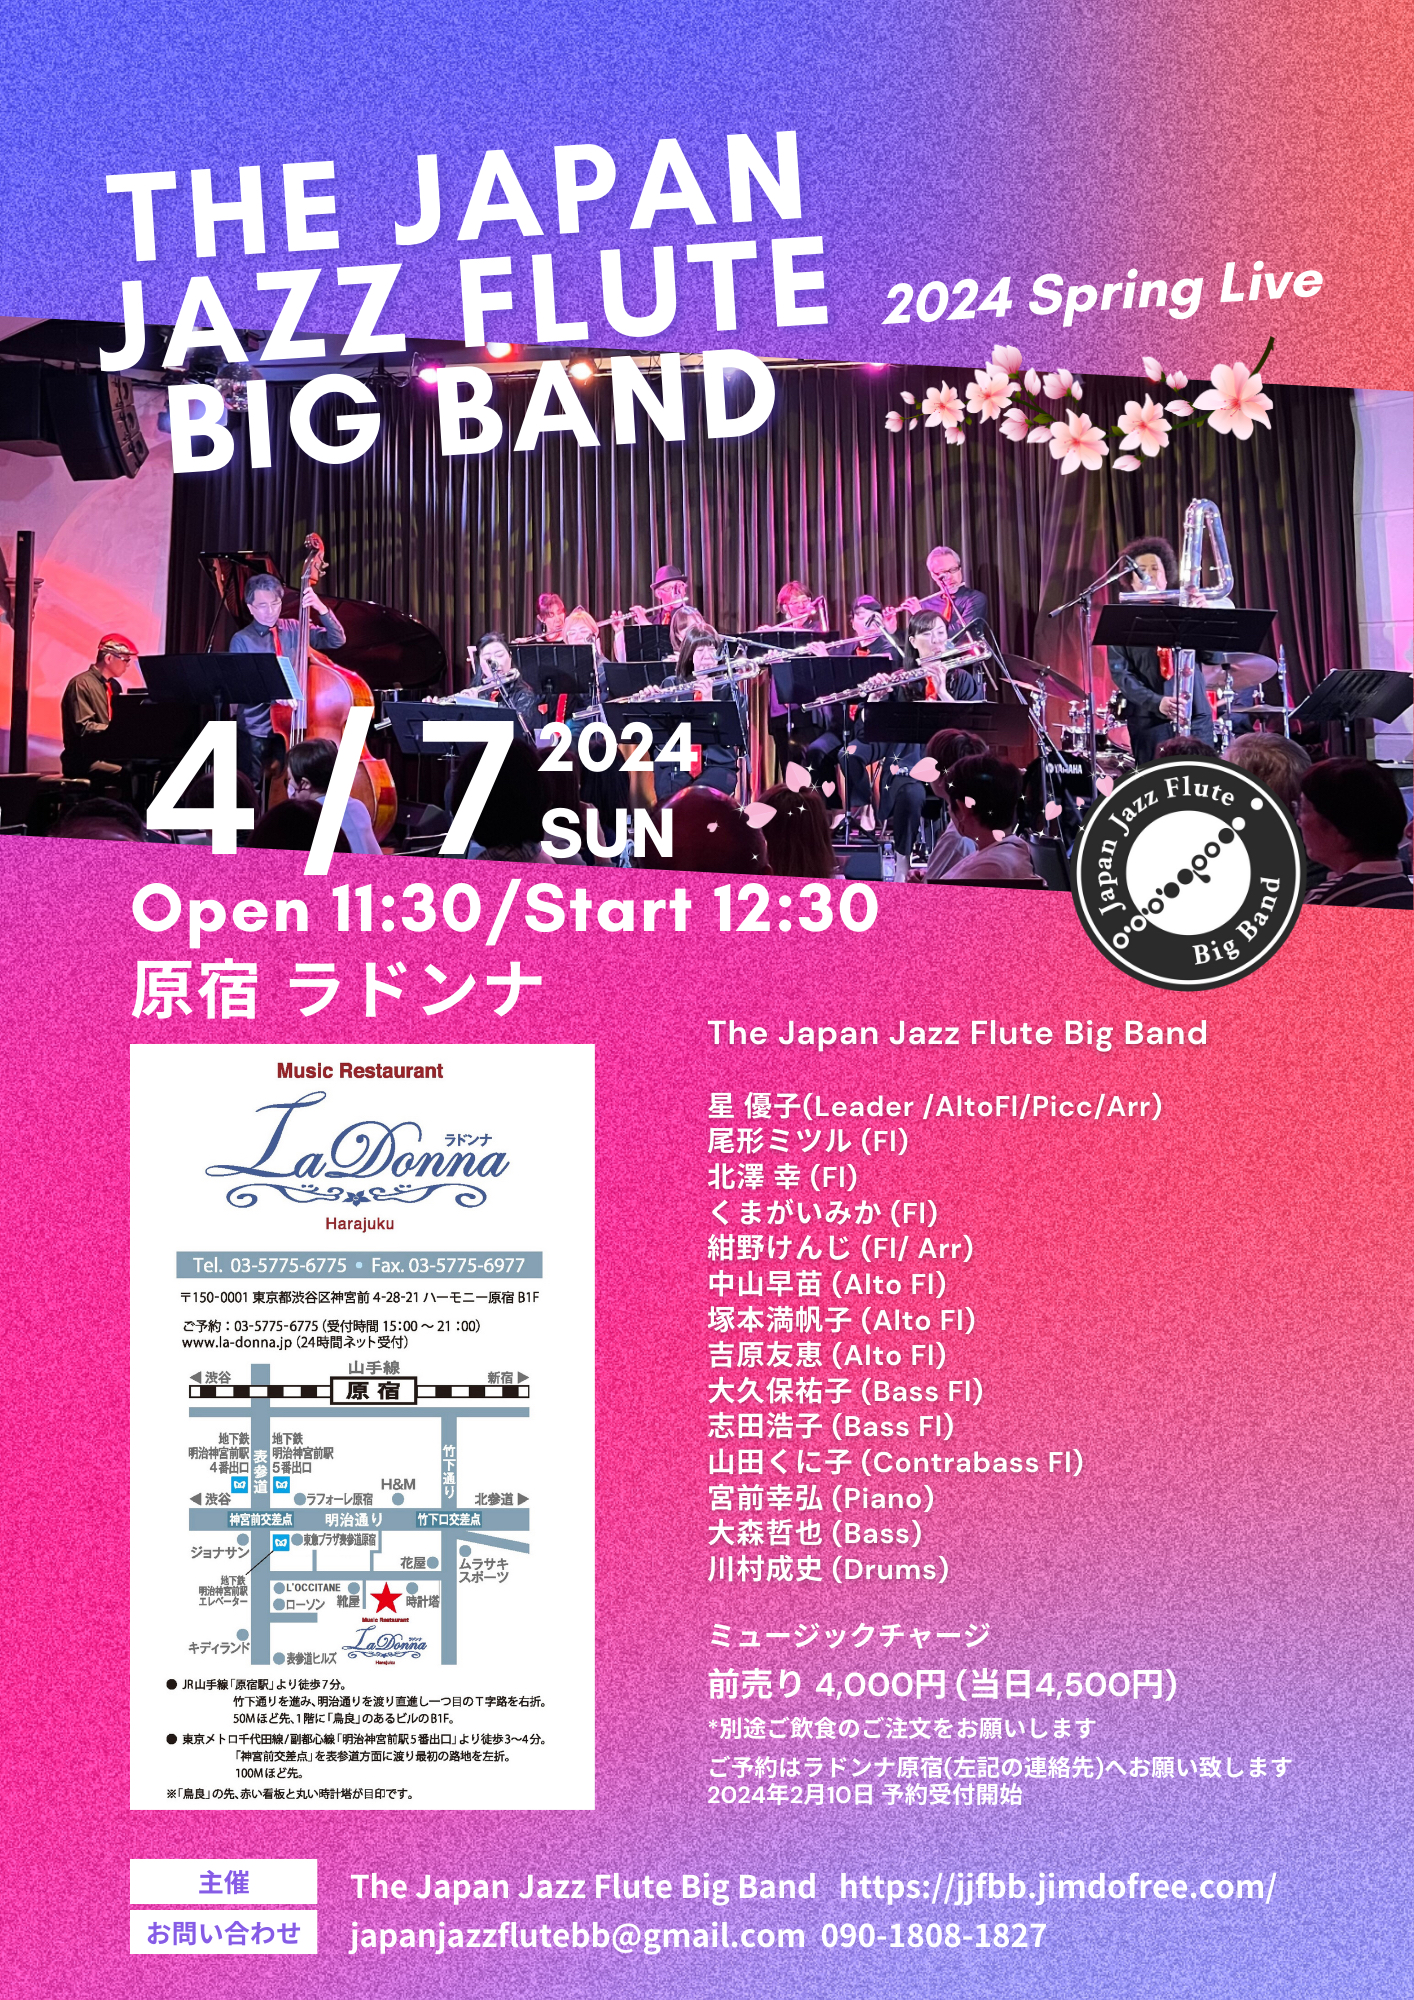 The Japan Jazz Flute Big Band 2024 Spring Live